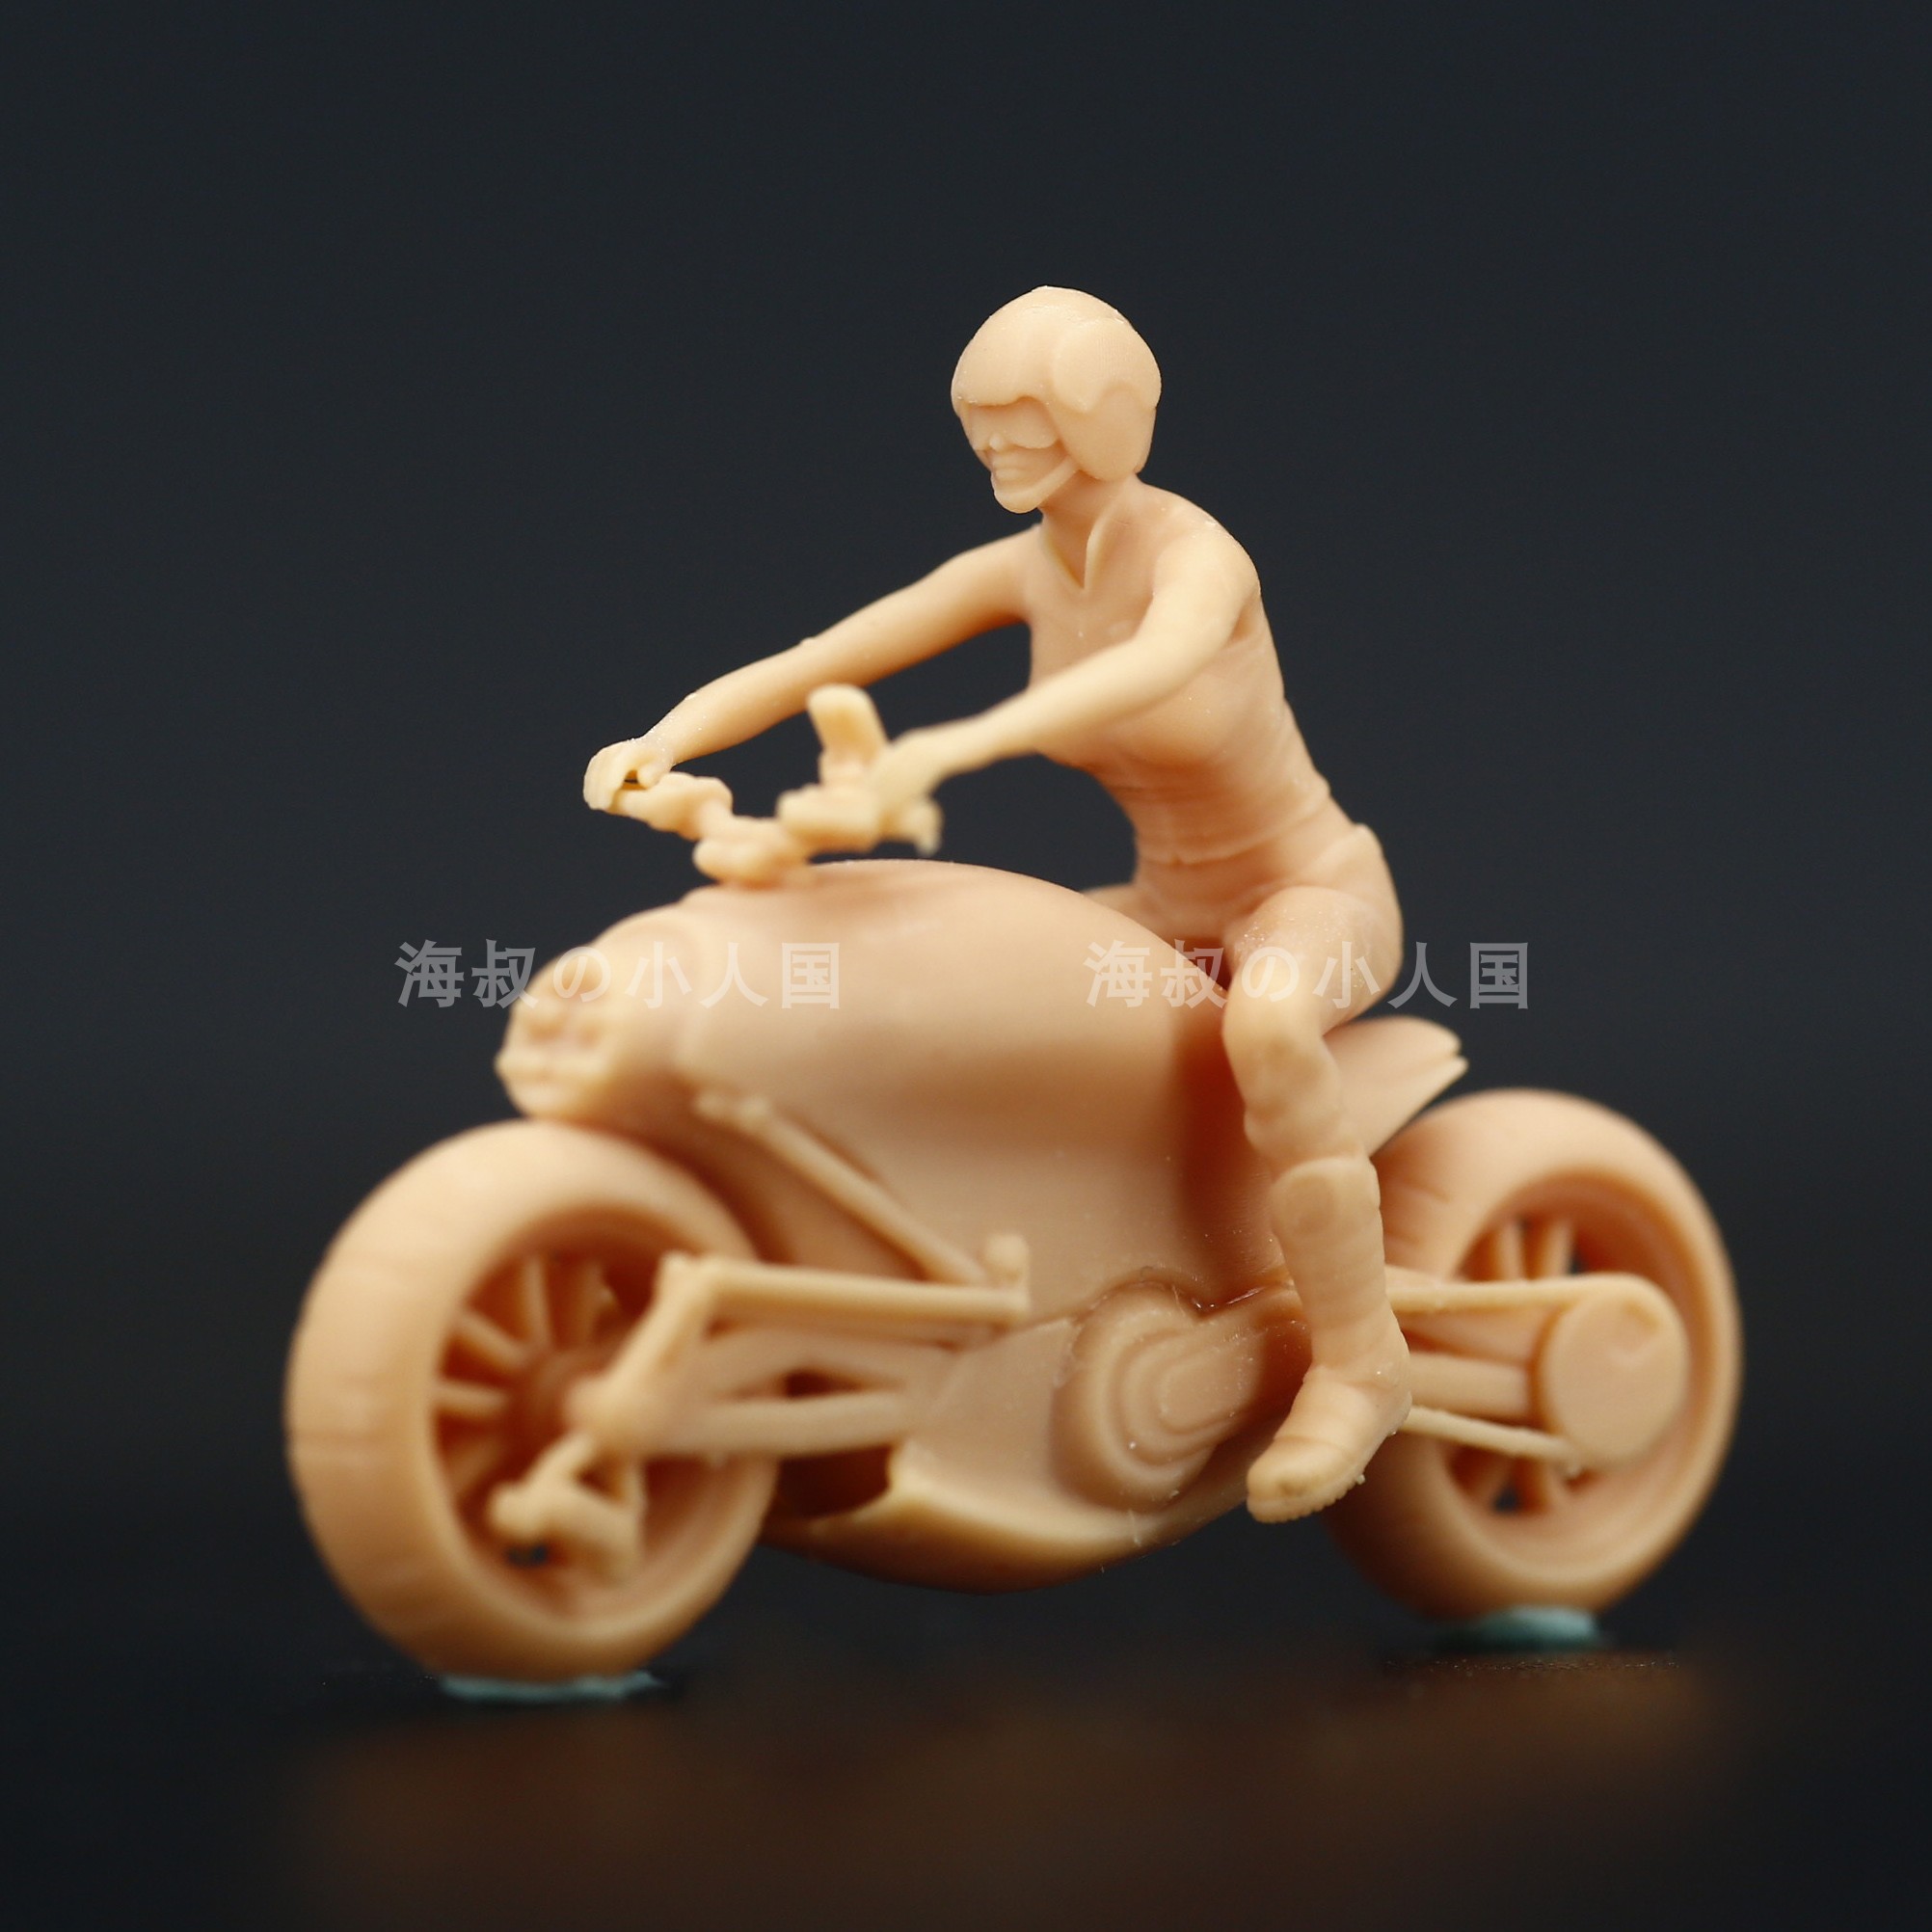 【海叔】A013骑未来科技摩托车美女1:64人偶模型手办1:43微缩小人